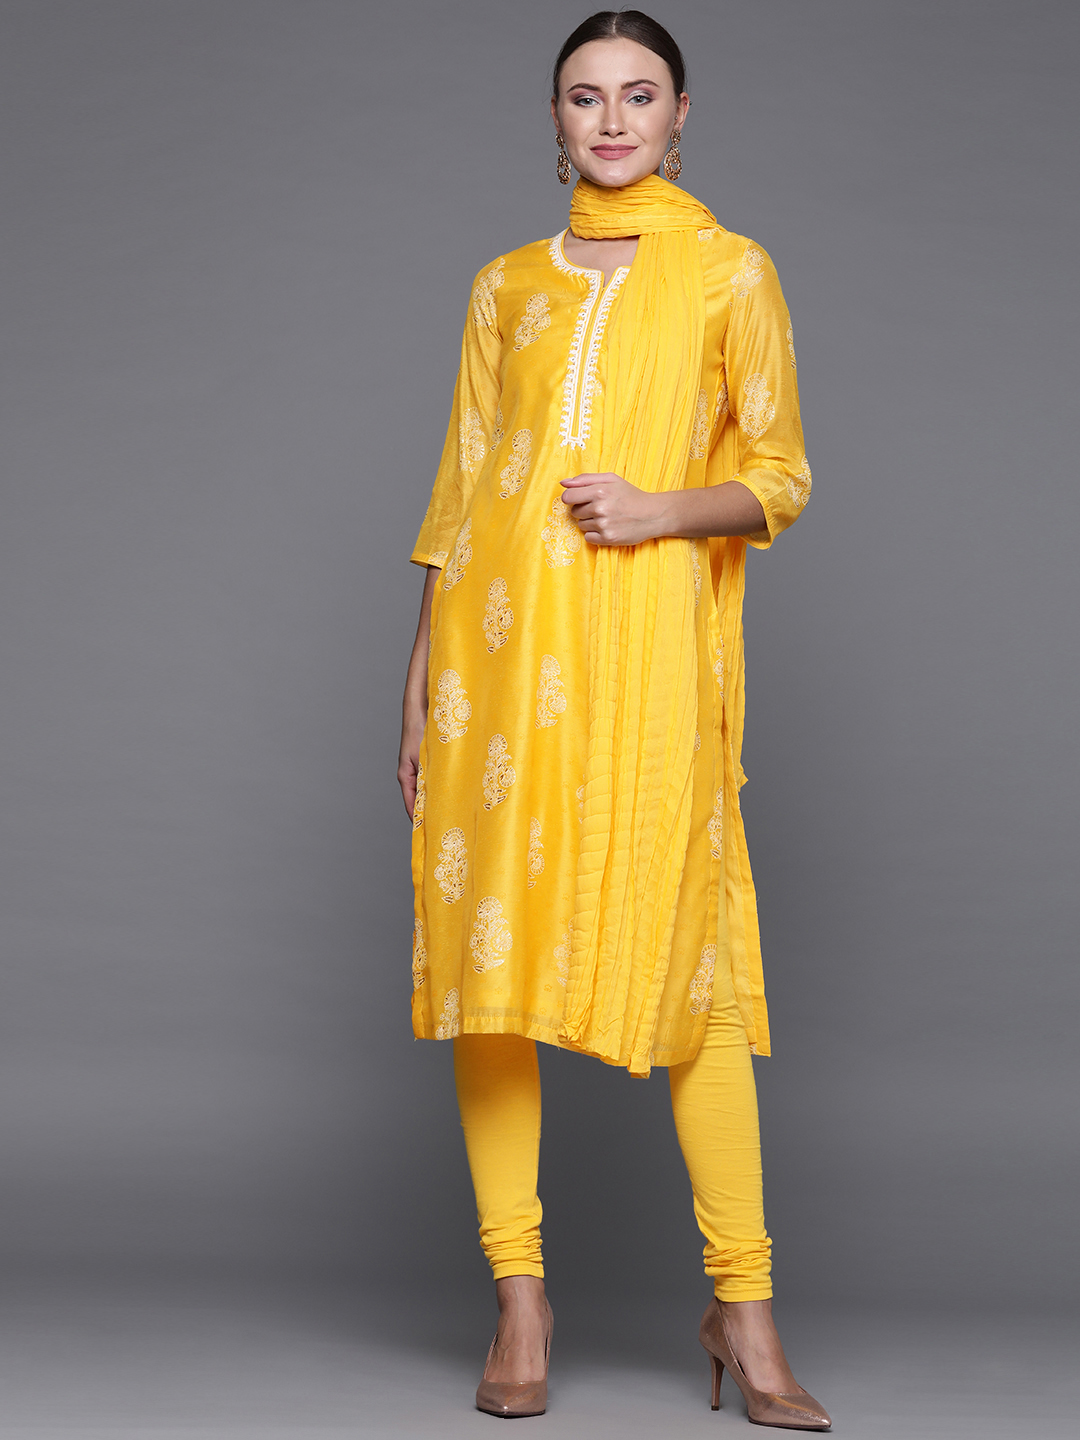 Biba Women Yellow & White Printed Kurta with Churidar & Dupatta Price in India